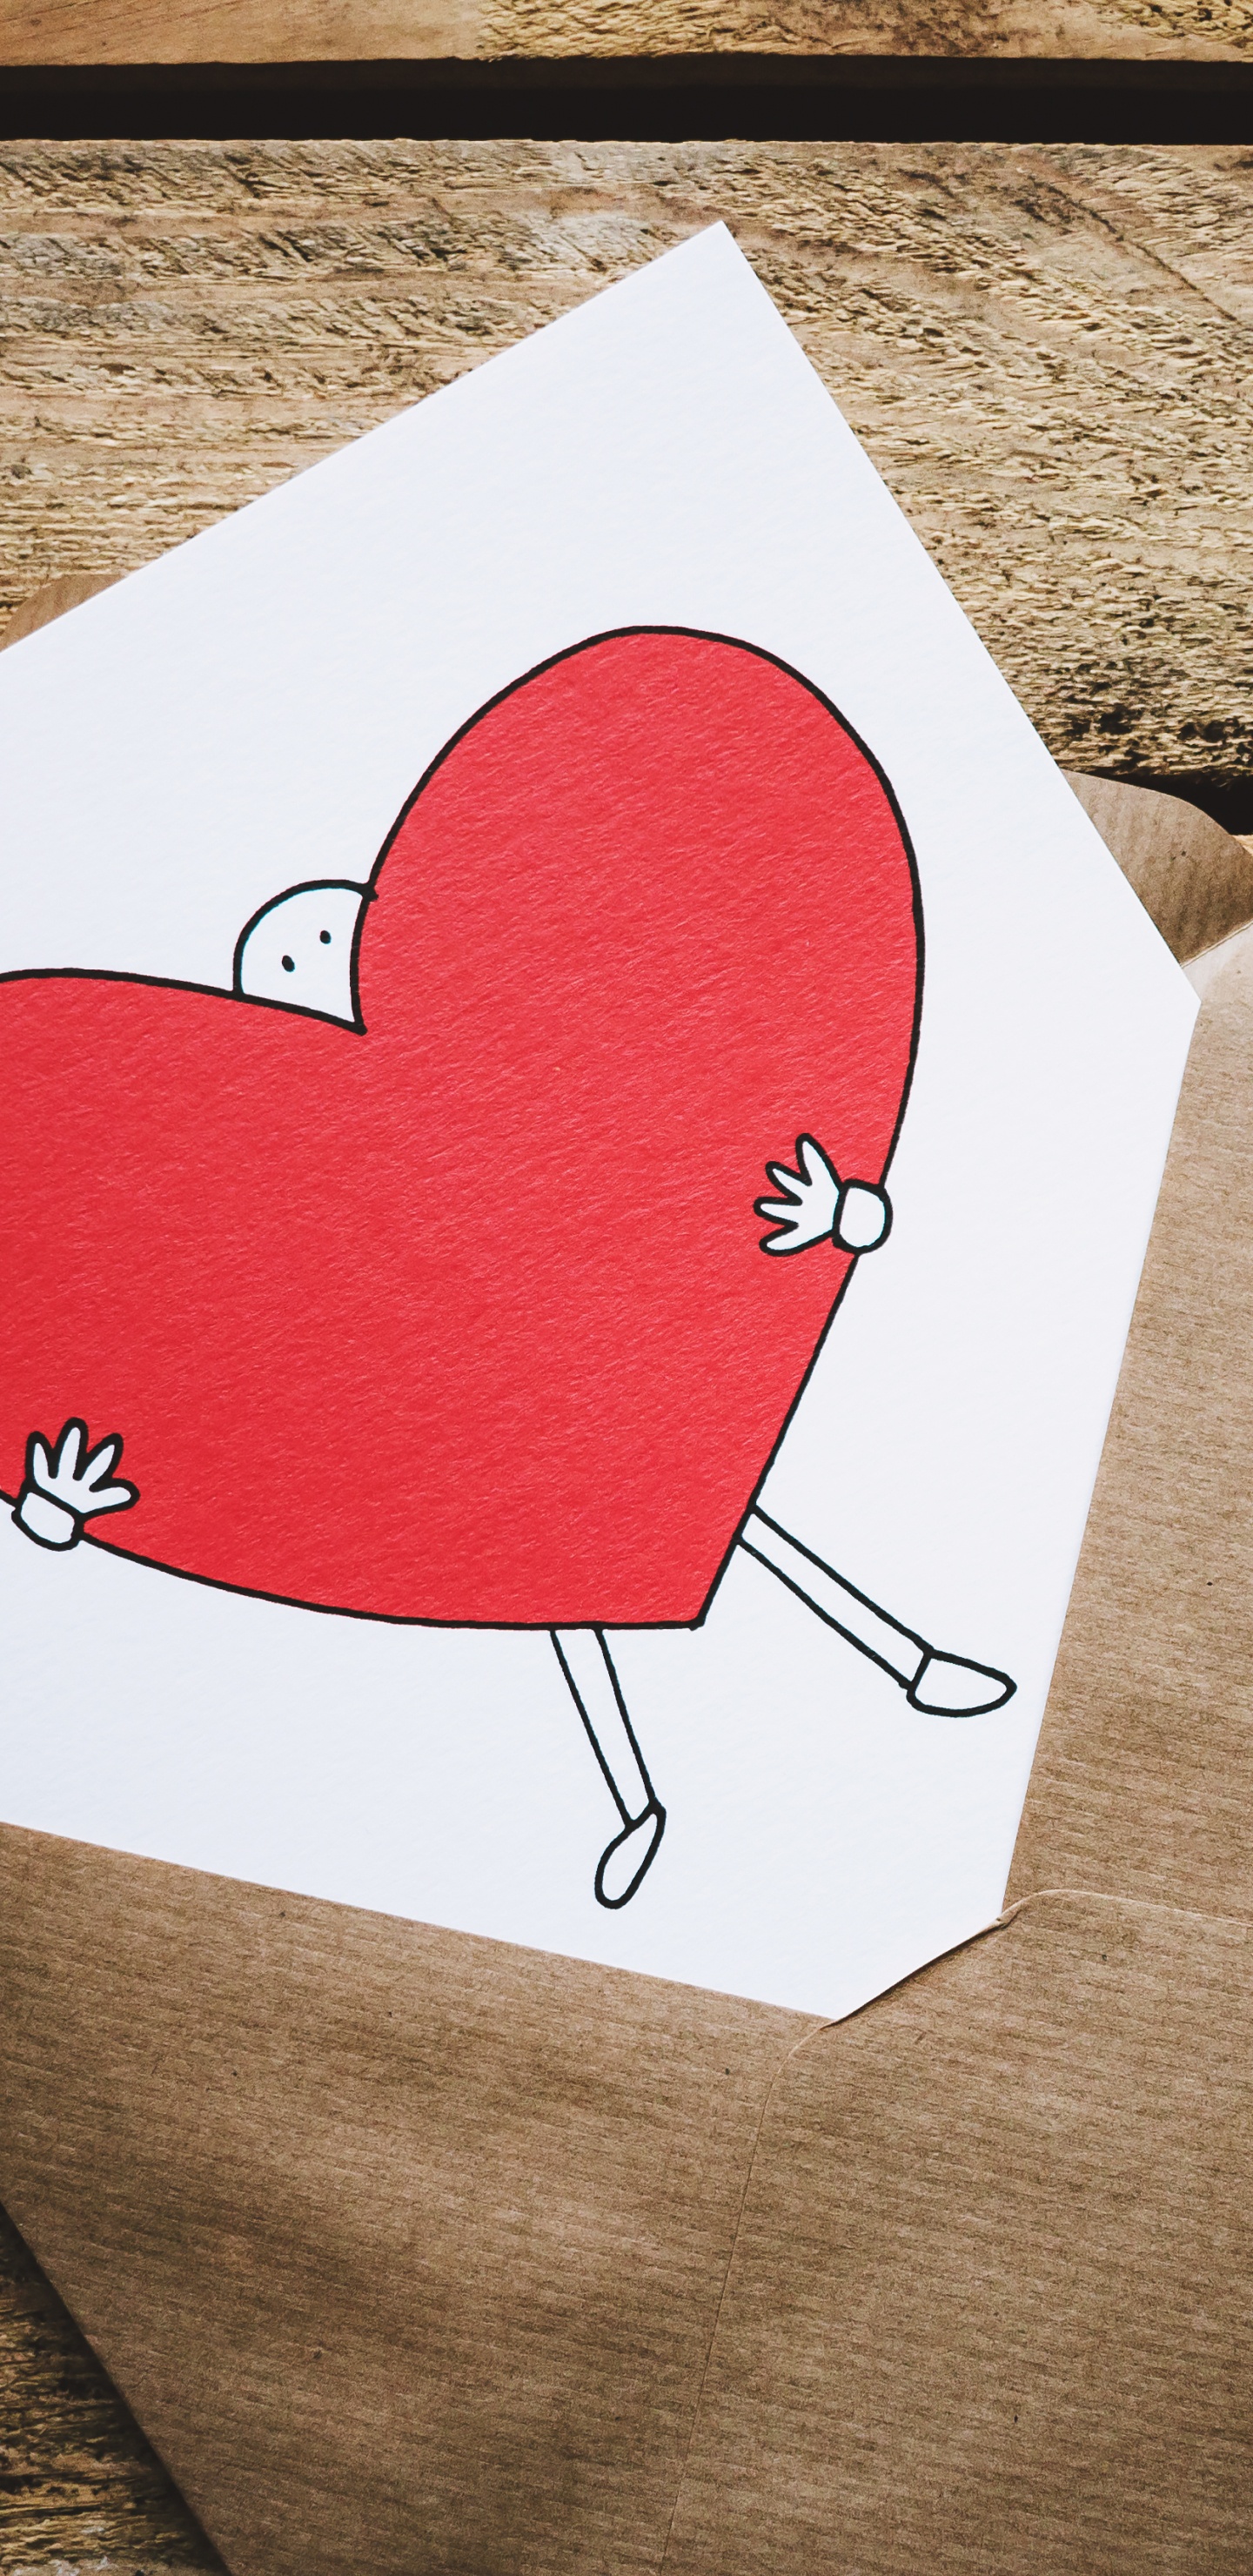 情书, 浪漫, 心脏, 红色的, 爱情 壁纸 1440x2960 允许